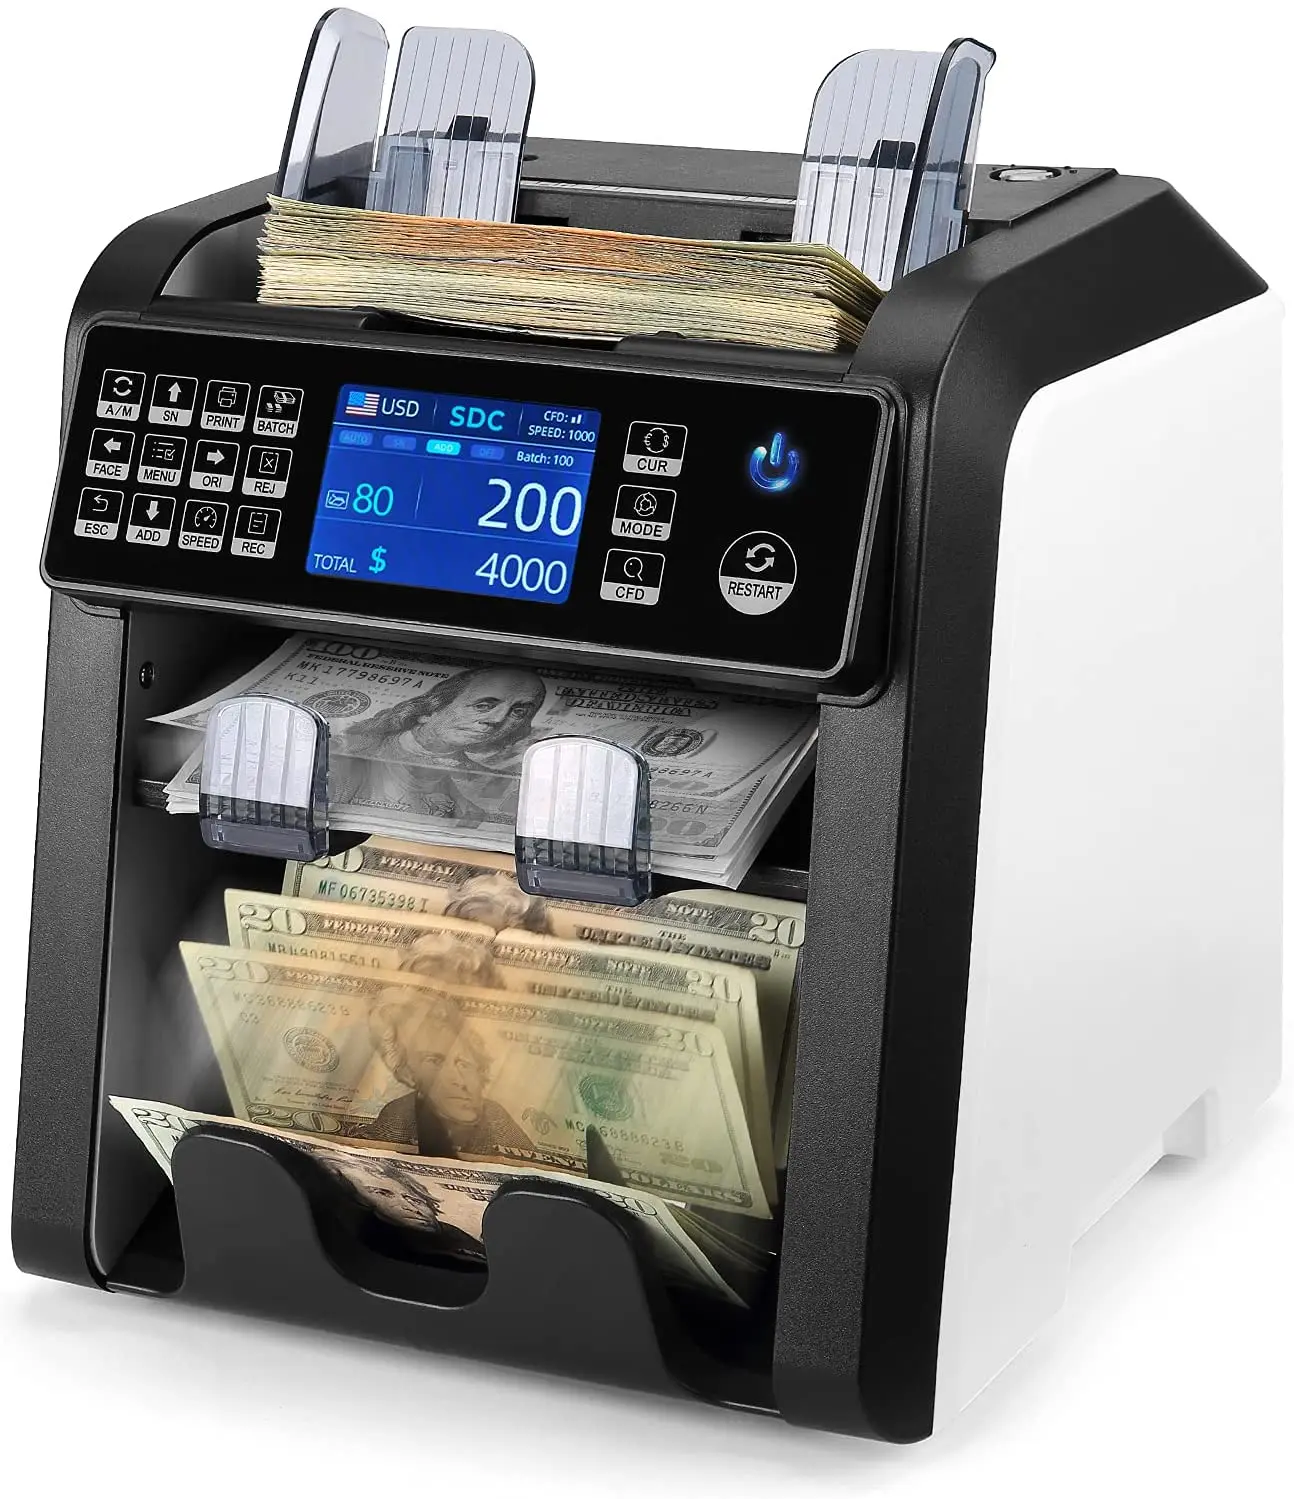 AL 950 Dual CIS 2 Pocket Currency Discriminator Banknote Sorter Money Value Counter